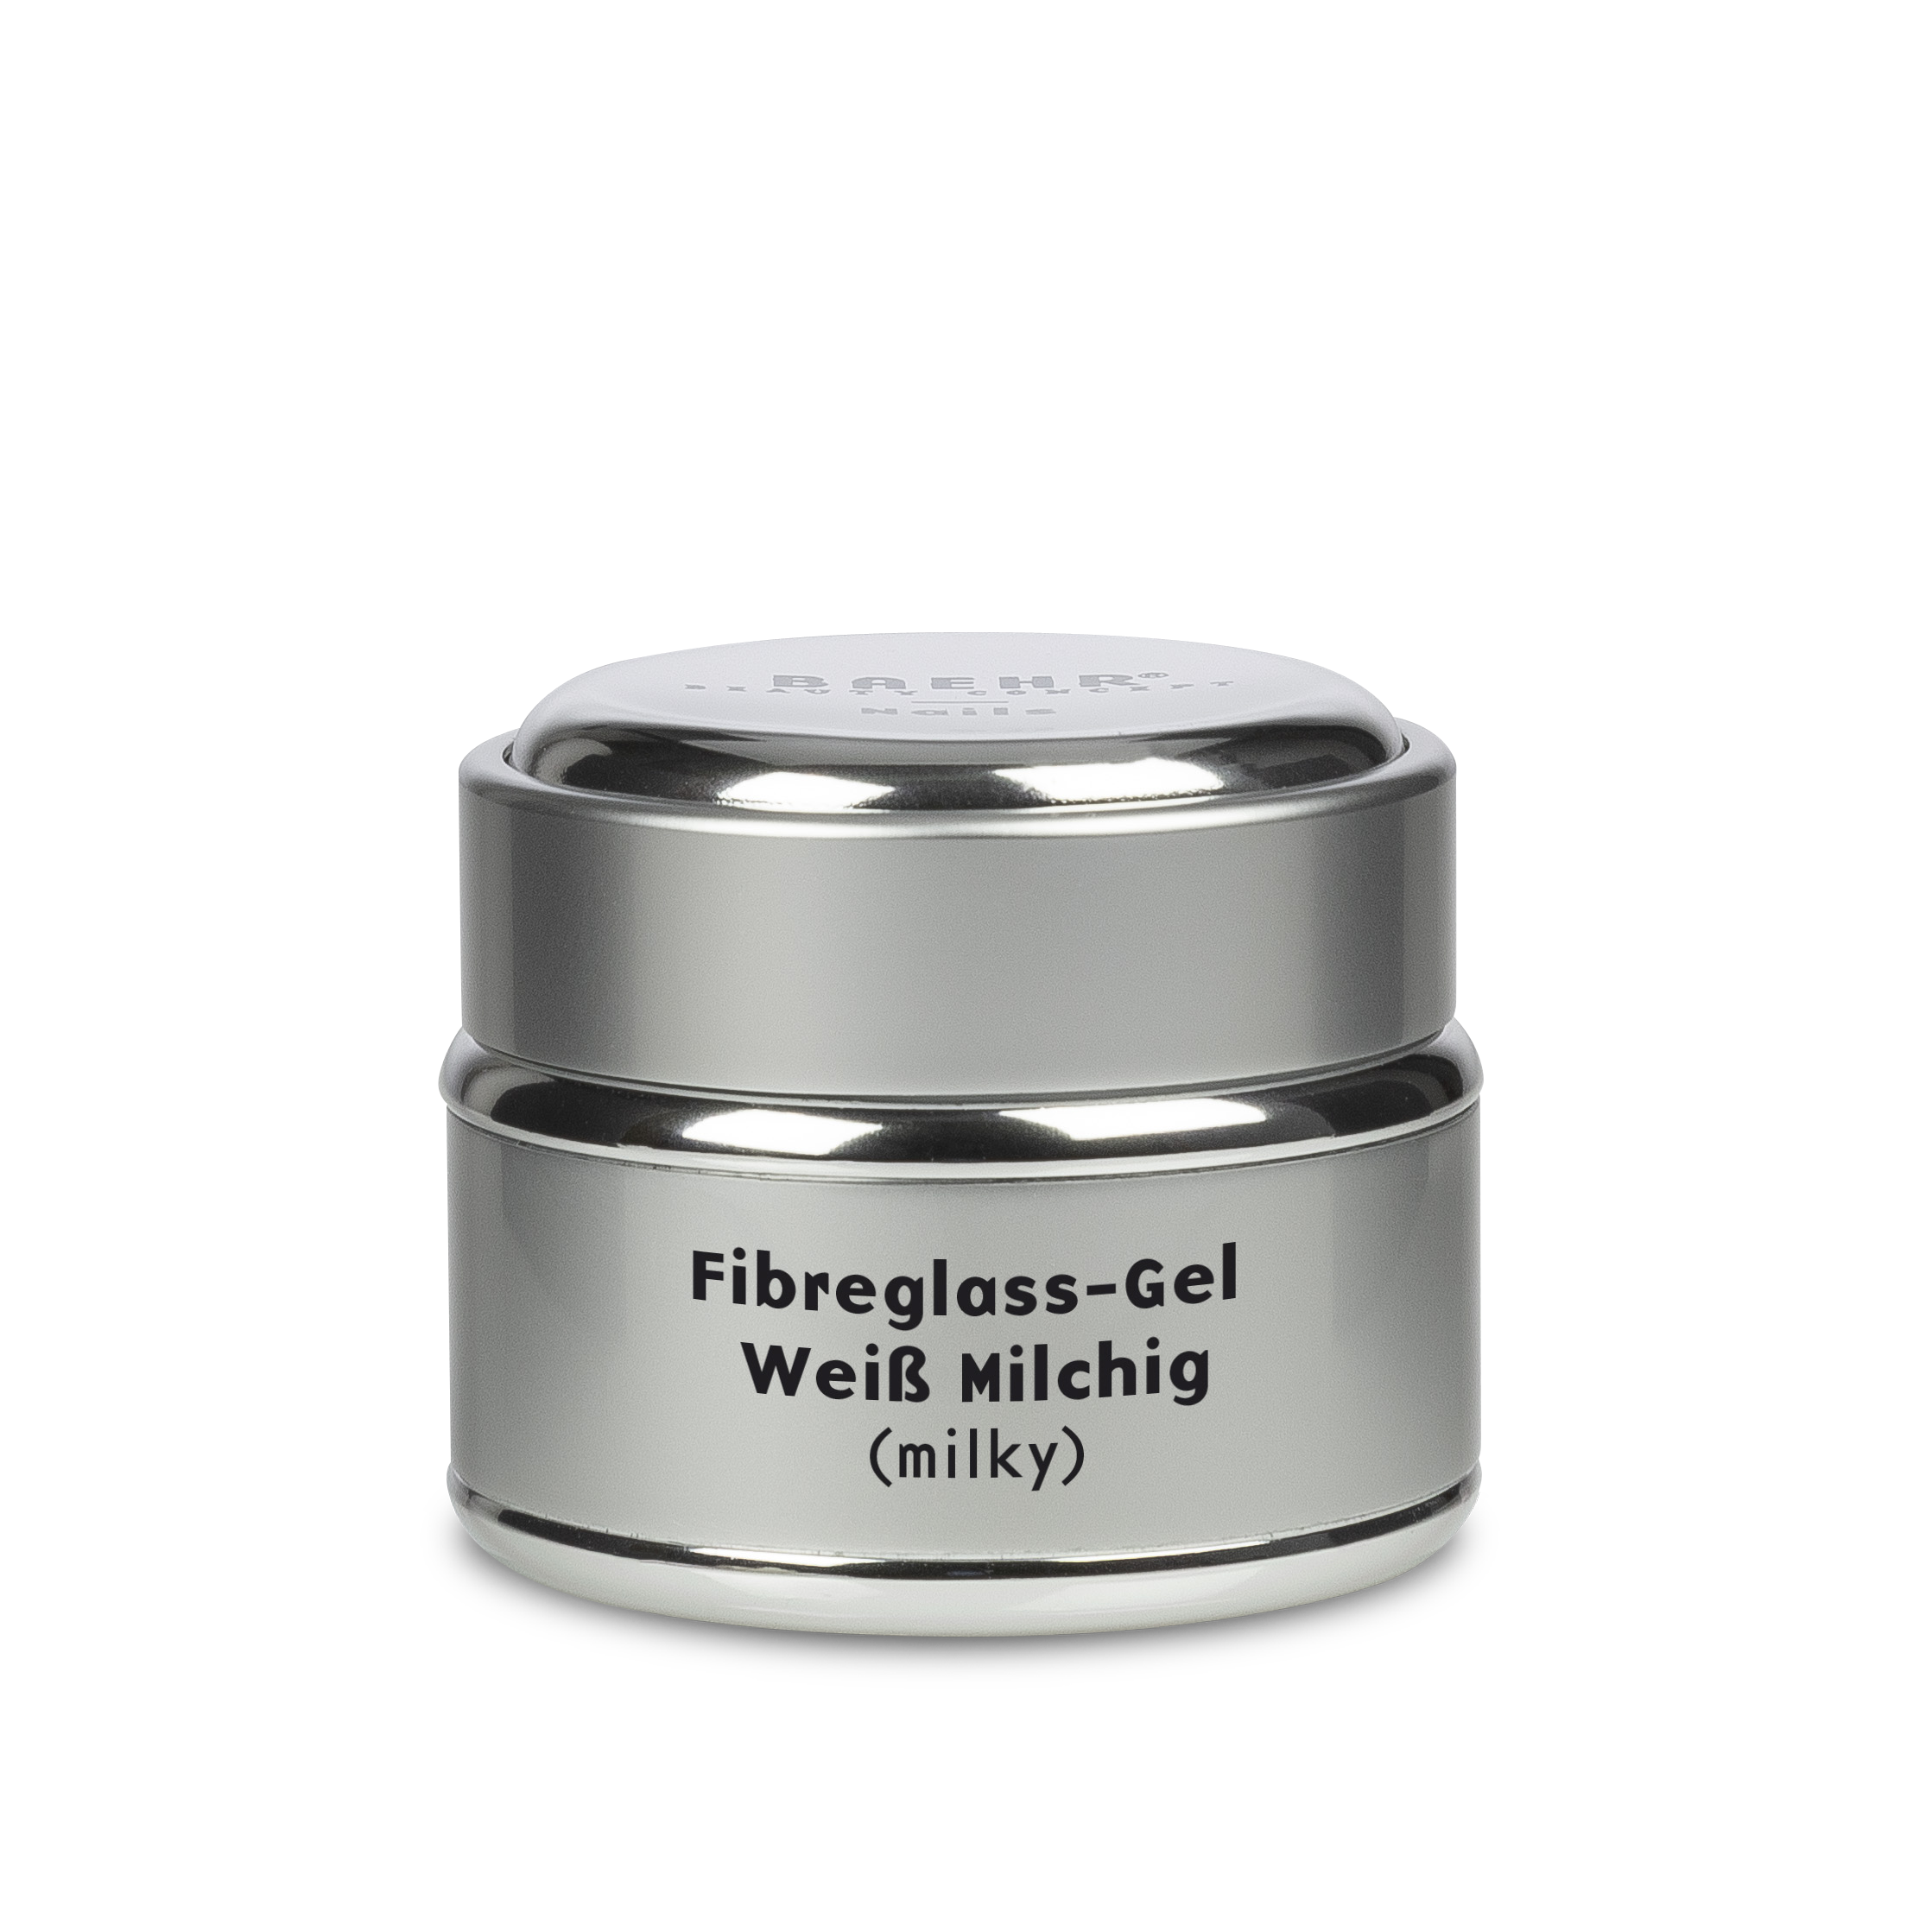 fibreglass-gel-wei-milchig_26664_5